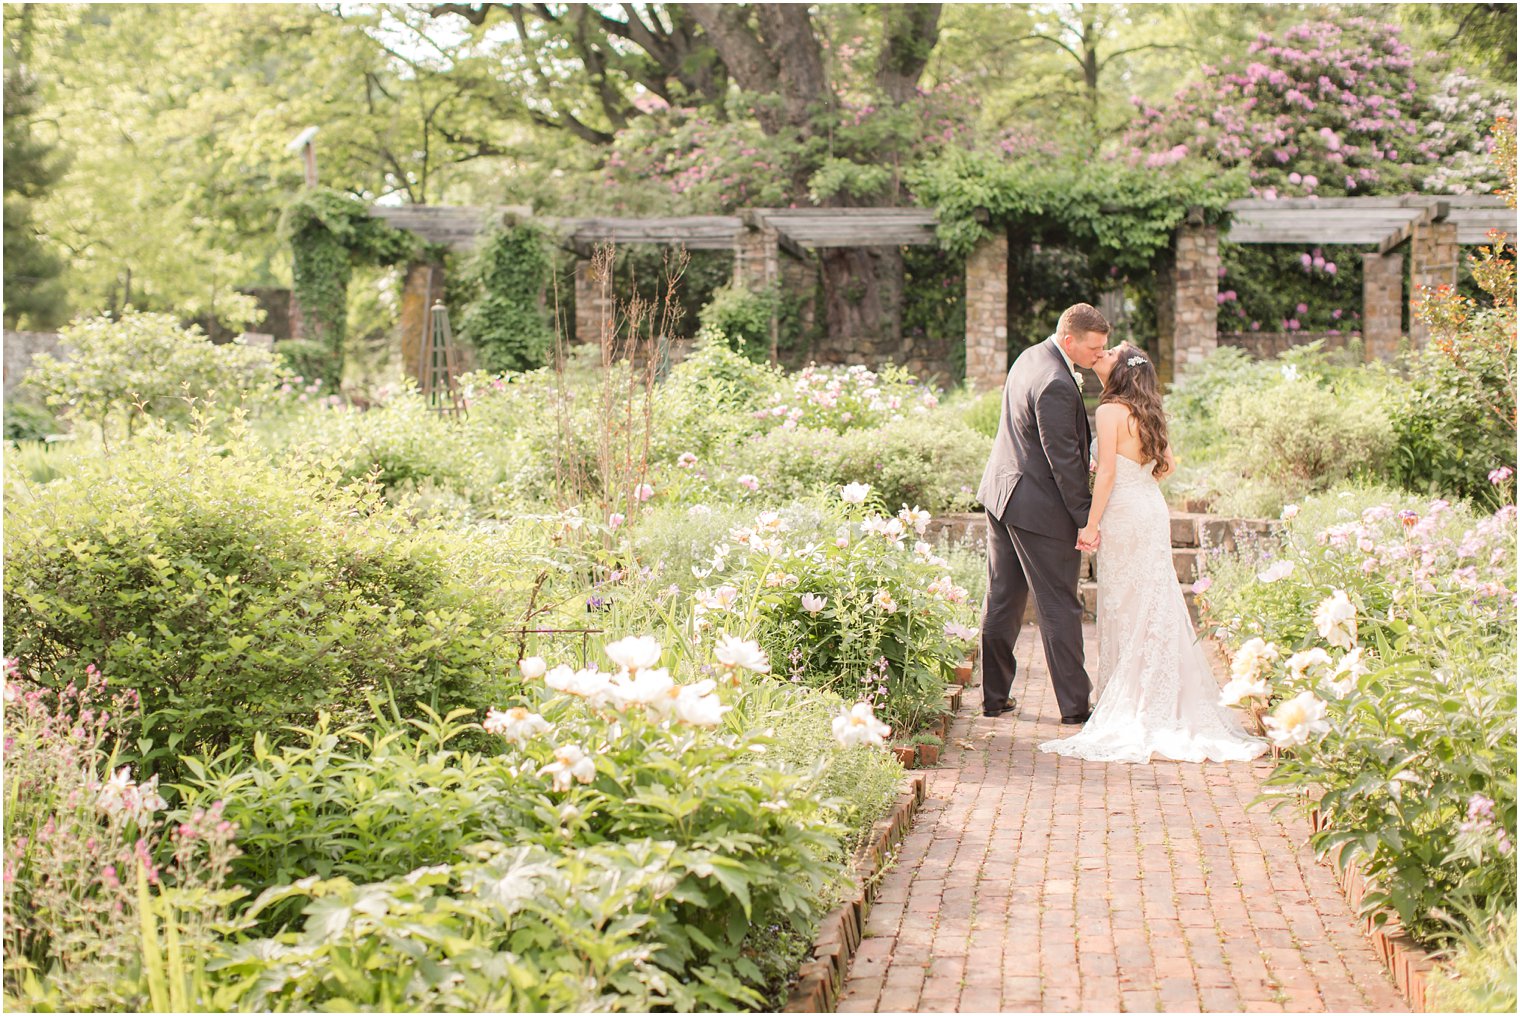 romantic gardens for wedding photos